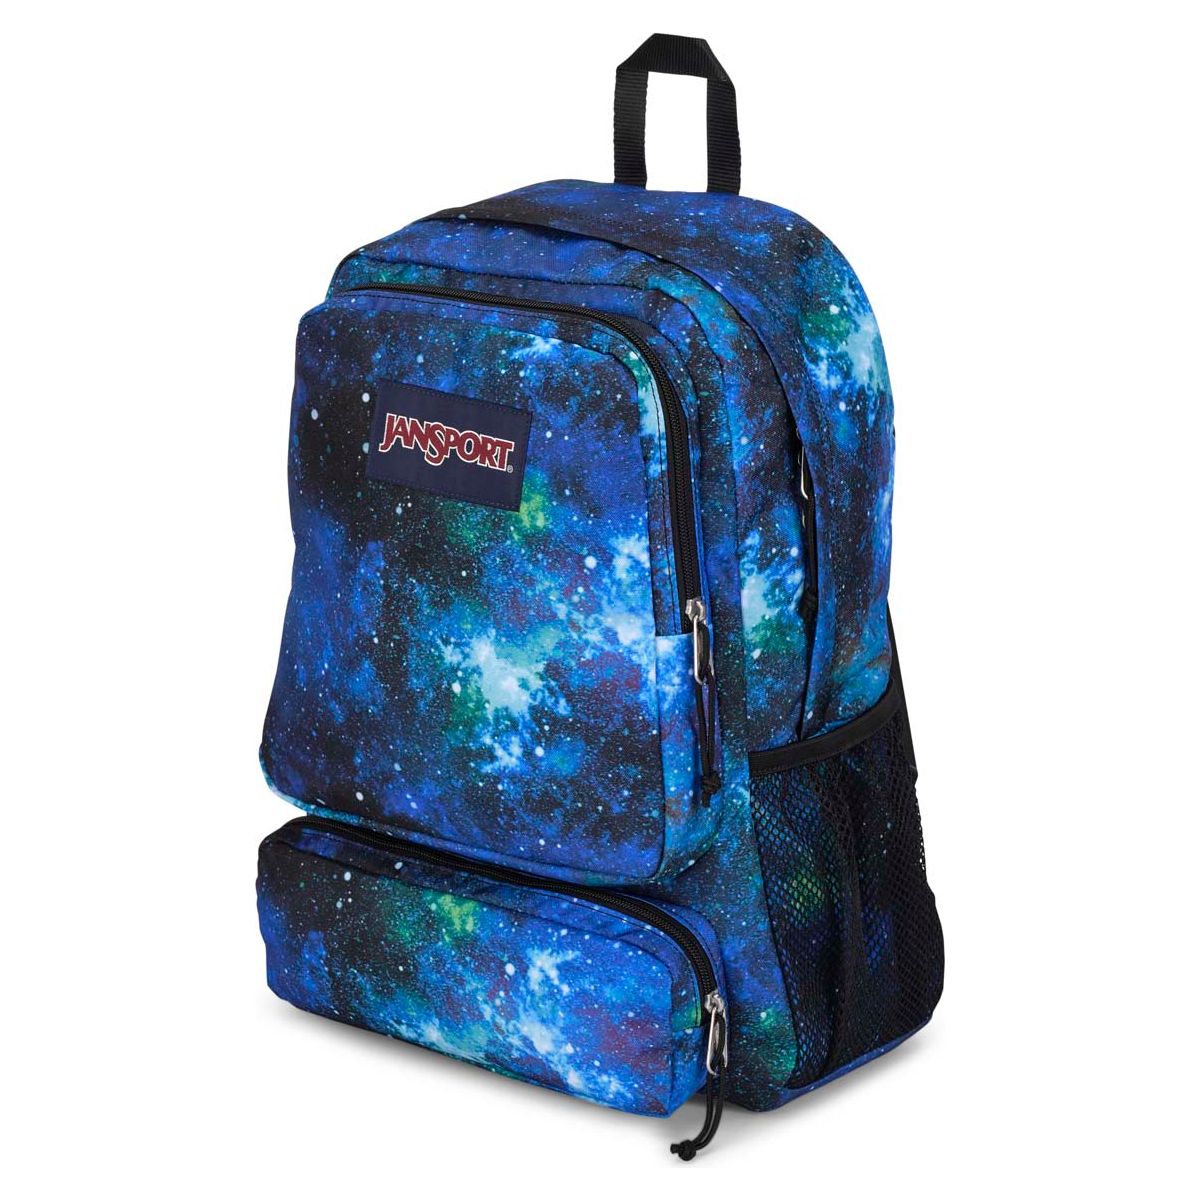 Jansport Doubleton Laptop Backpack - Cyberspace Galaxy